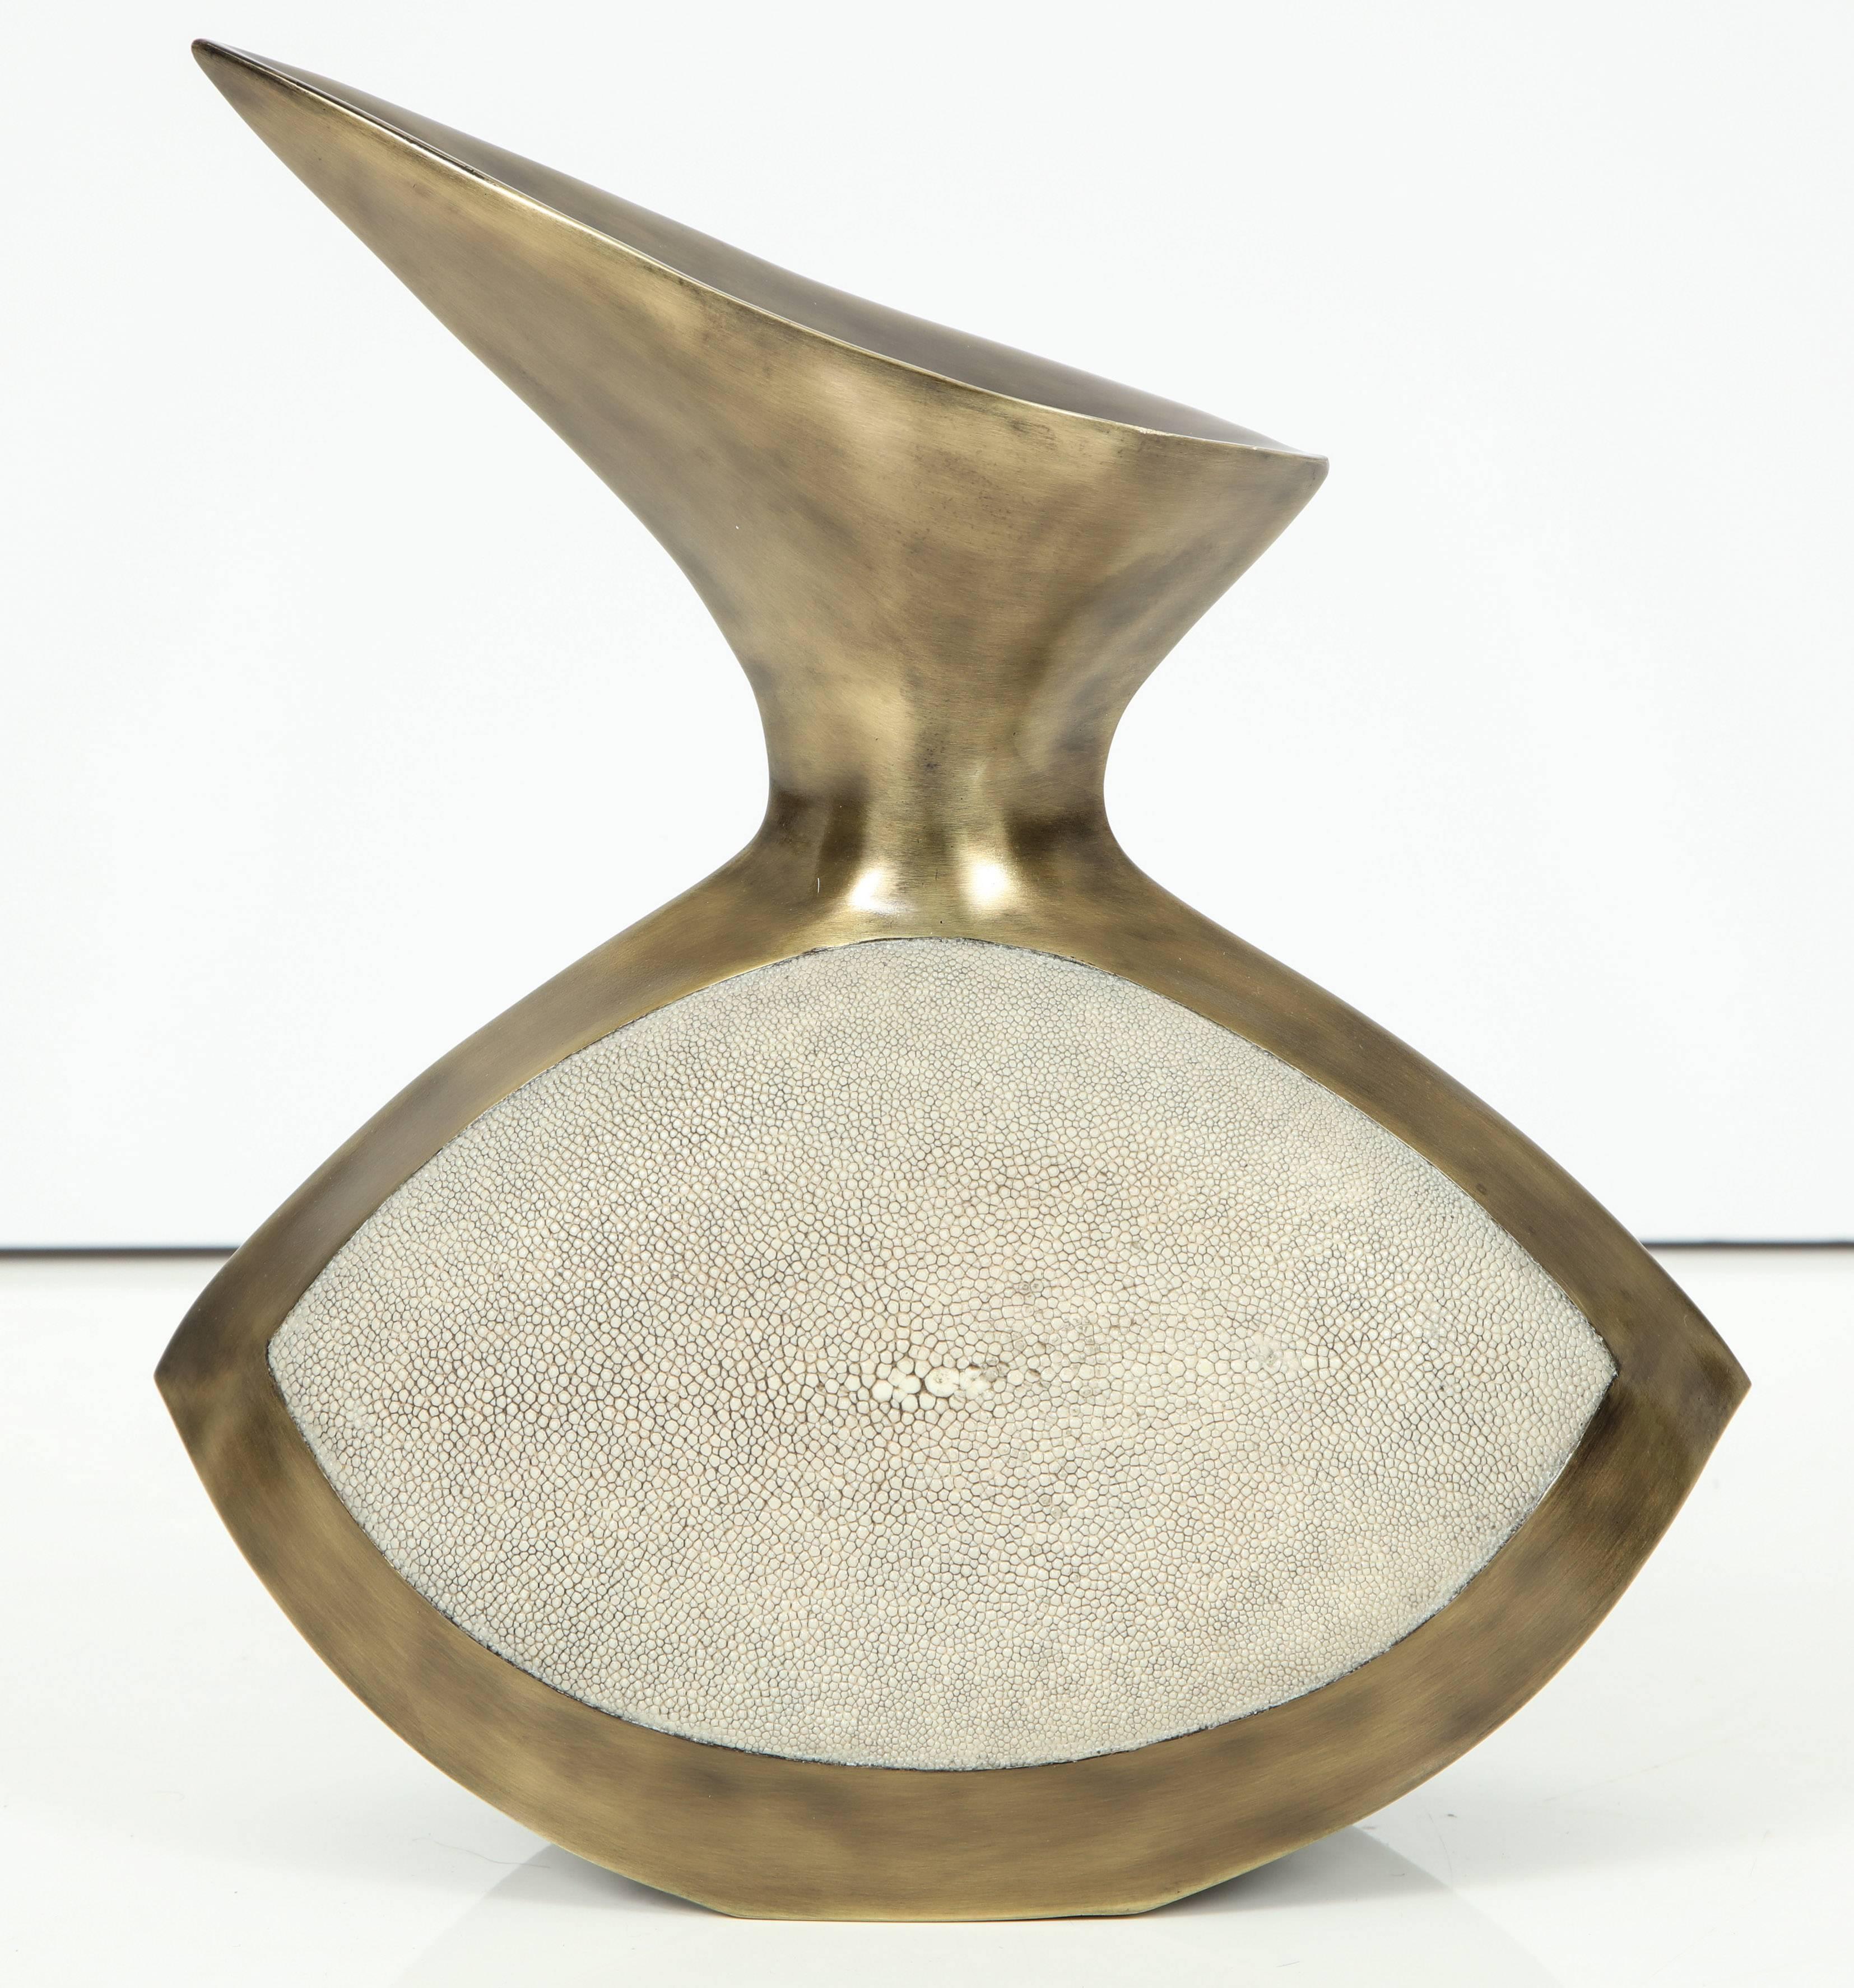 Shagreen vase with bronze details, France.